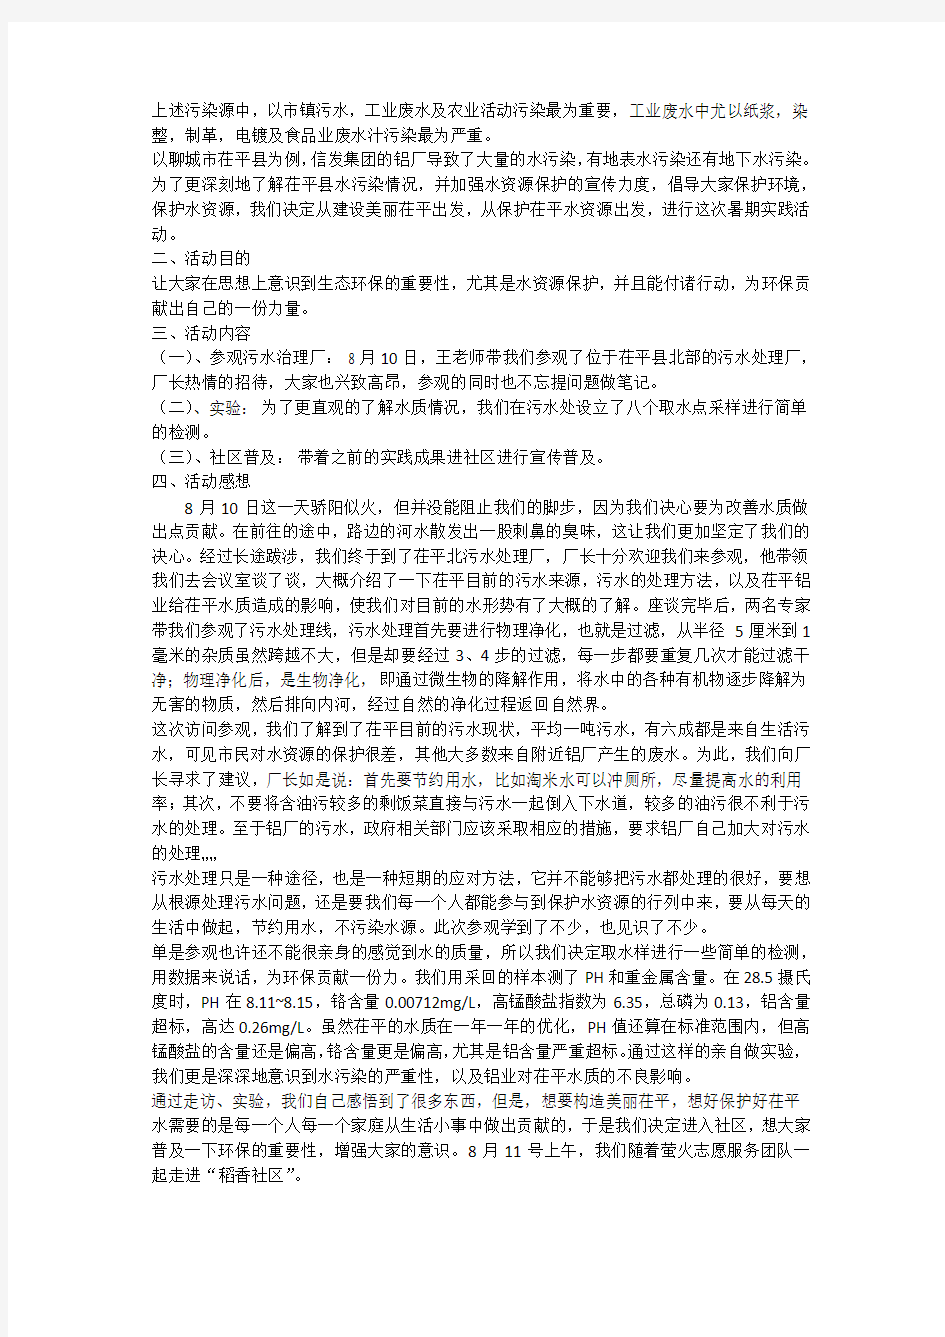 关于我的中国梦生态环保的调查报告